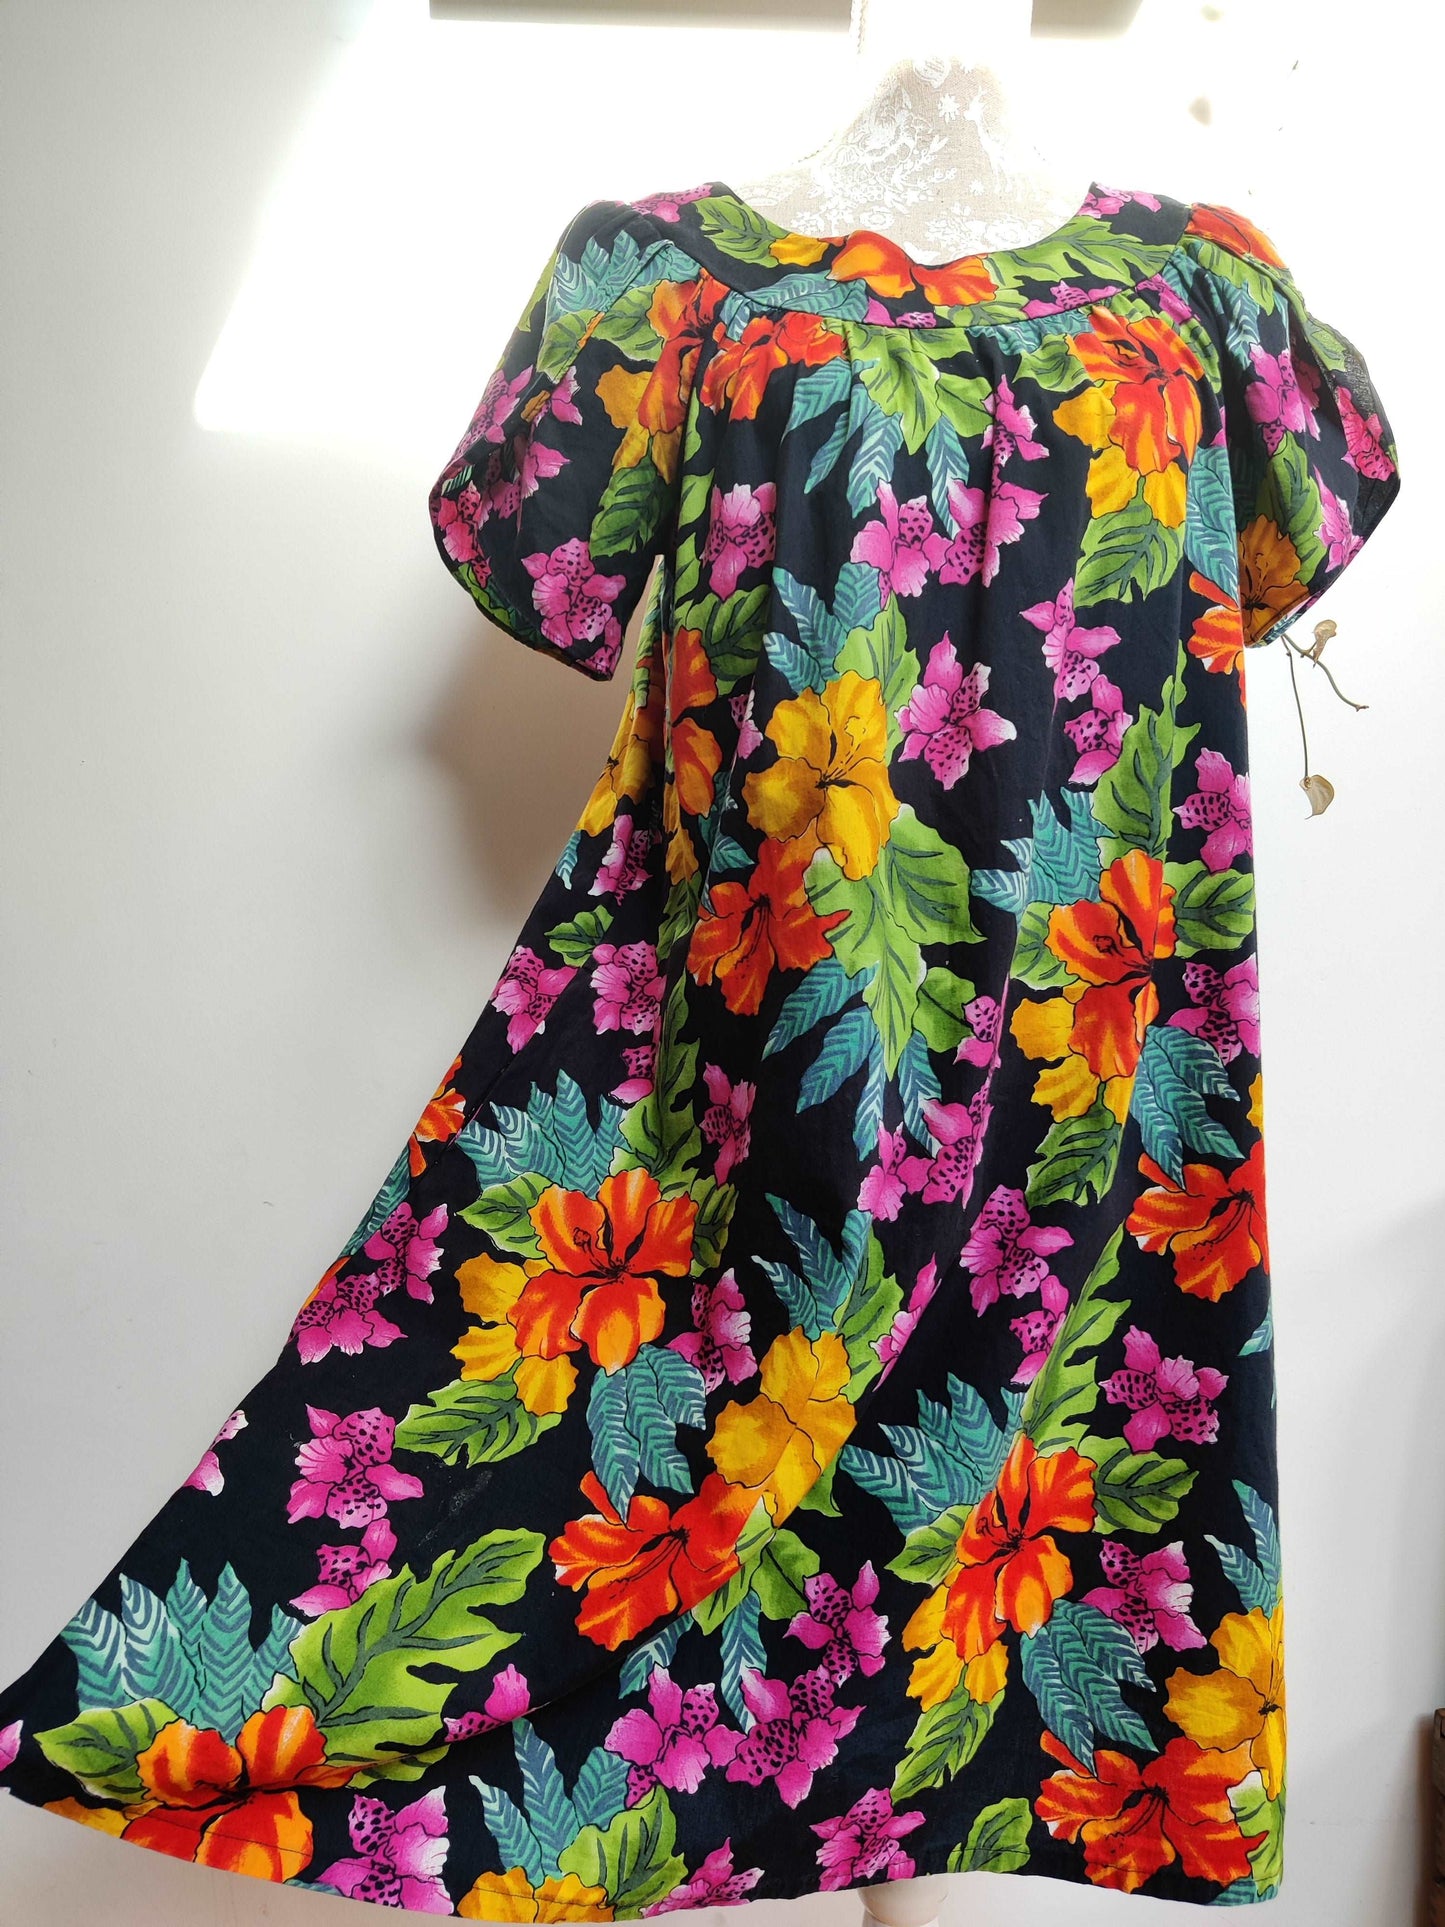 Incredible vintage Hawaiian summer dress